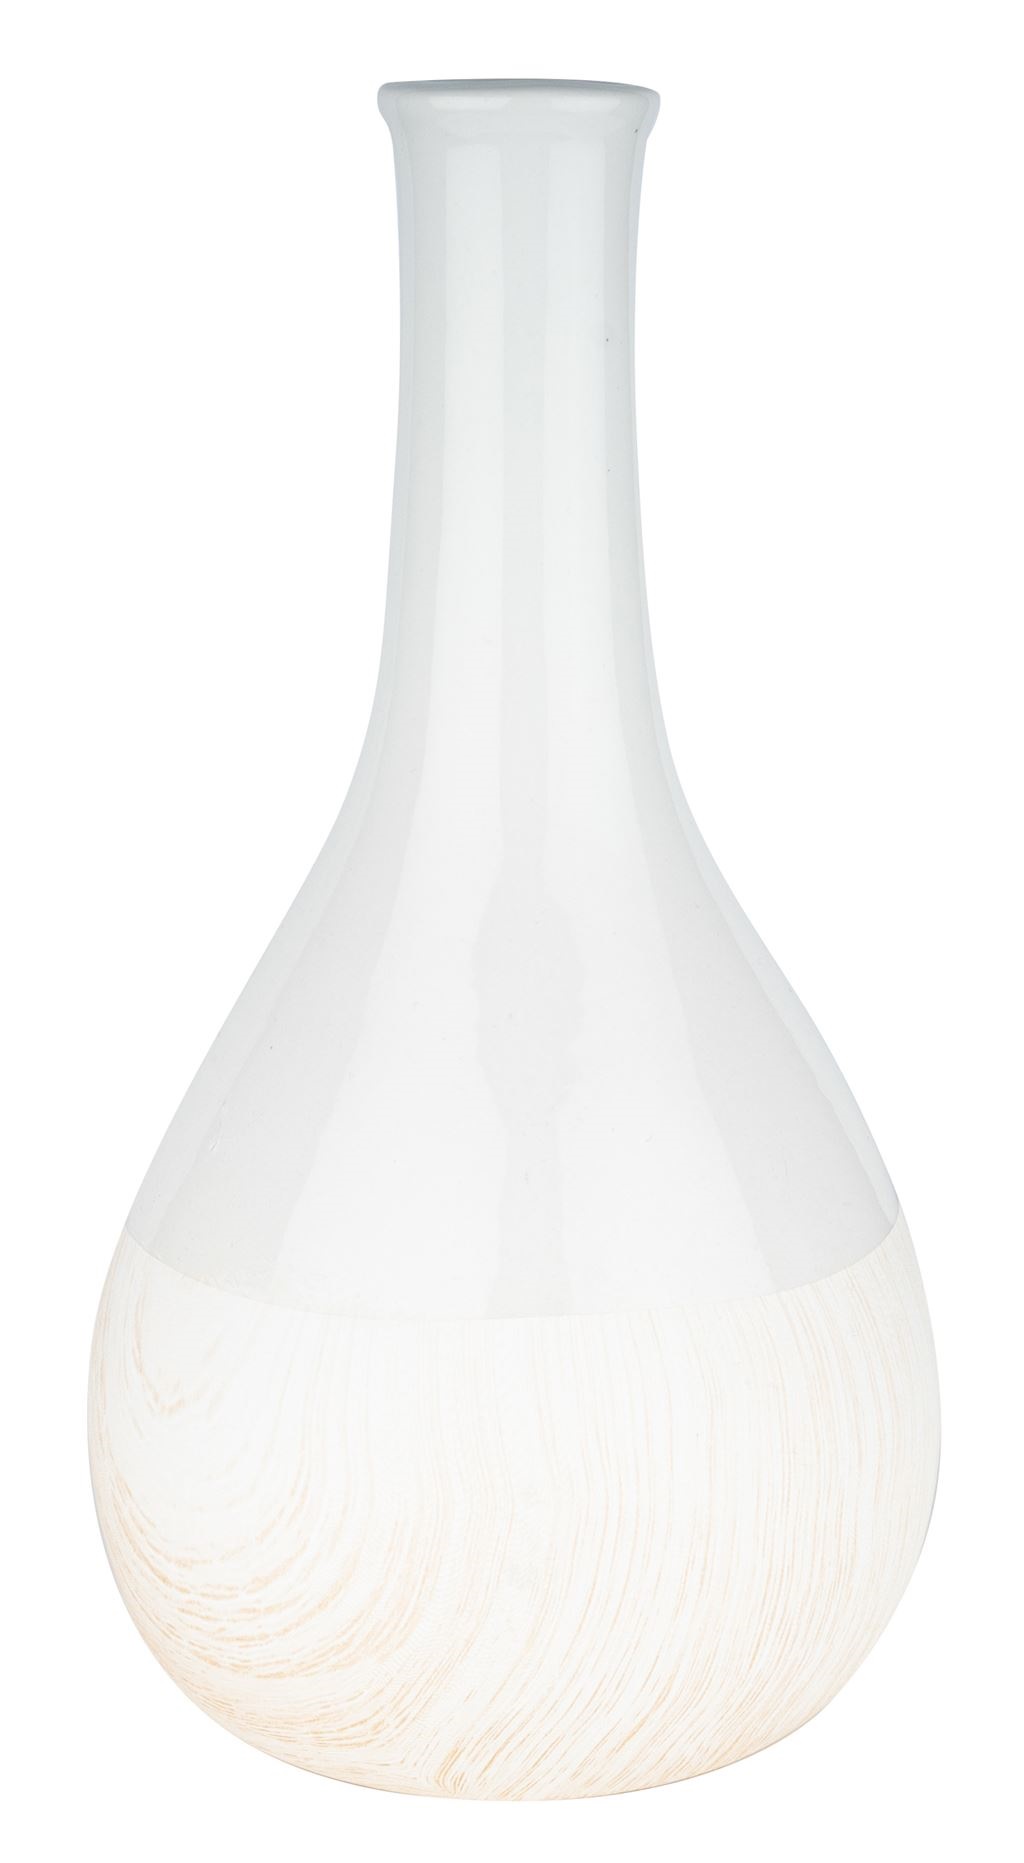 Vaza keramična bela wooden 12x12x25 cm